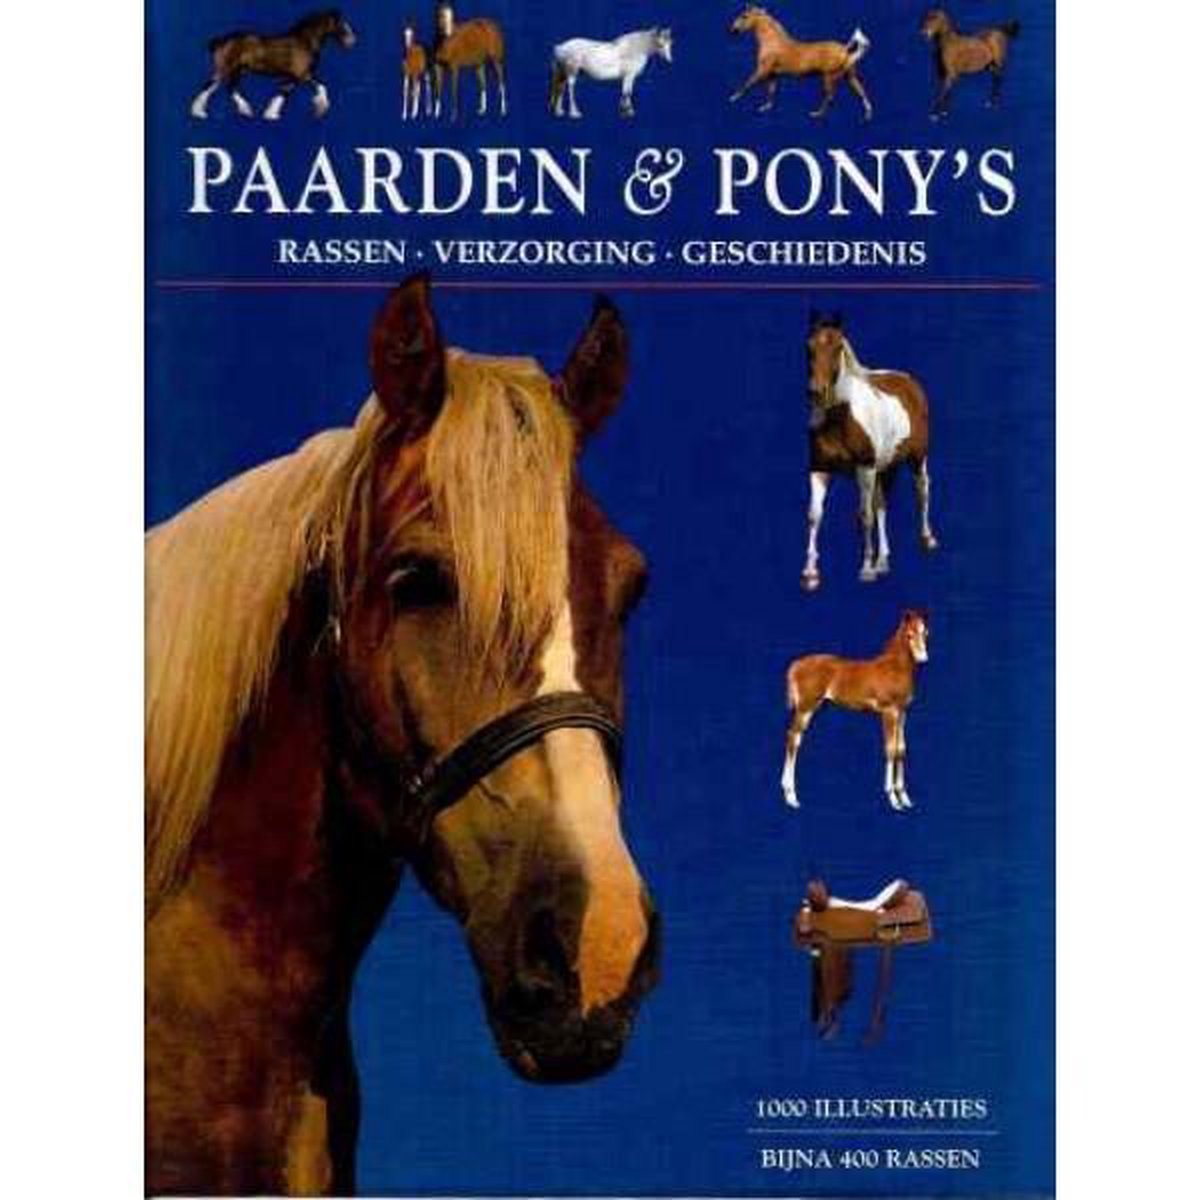 Paarden & Pony's